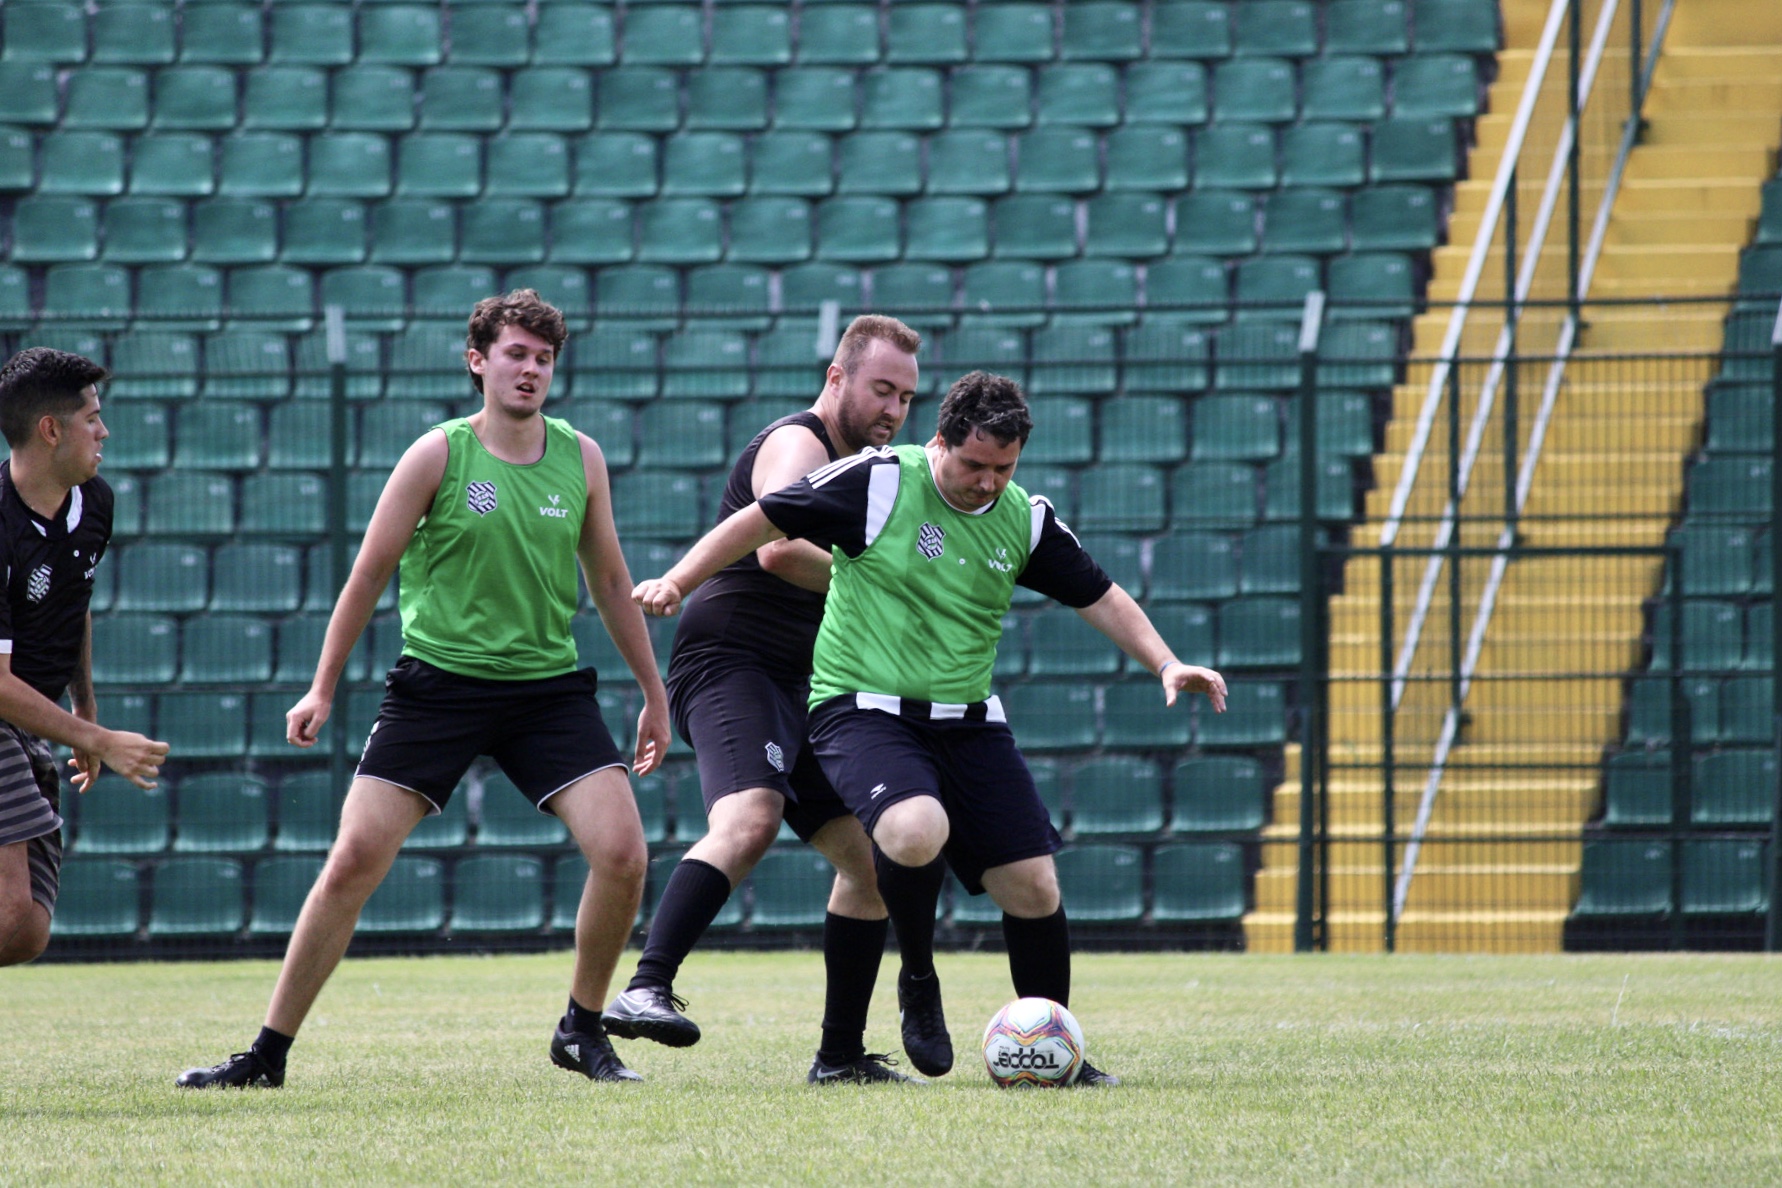 AMC participa de jogo de futebol no Estádio Orlando Scarpelli - AMC